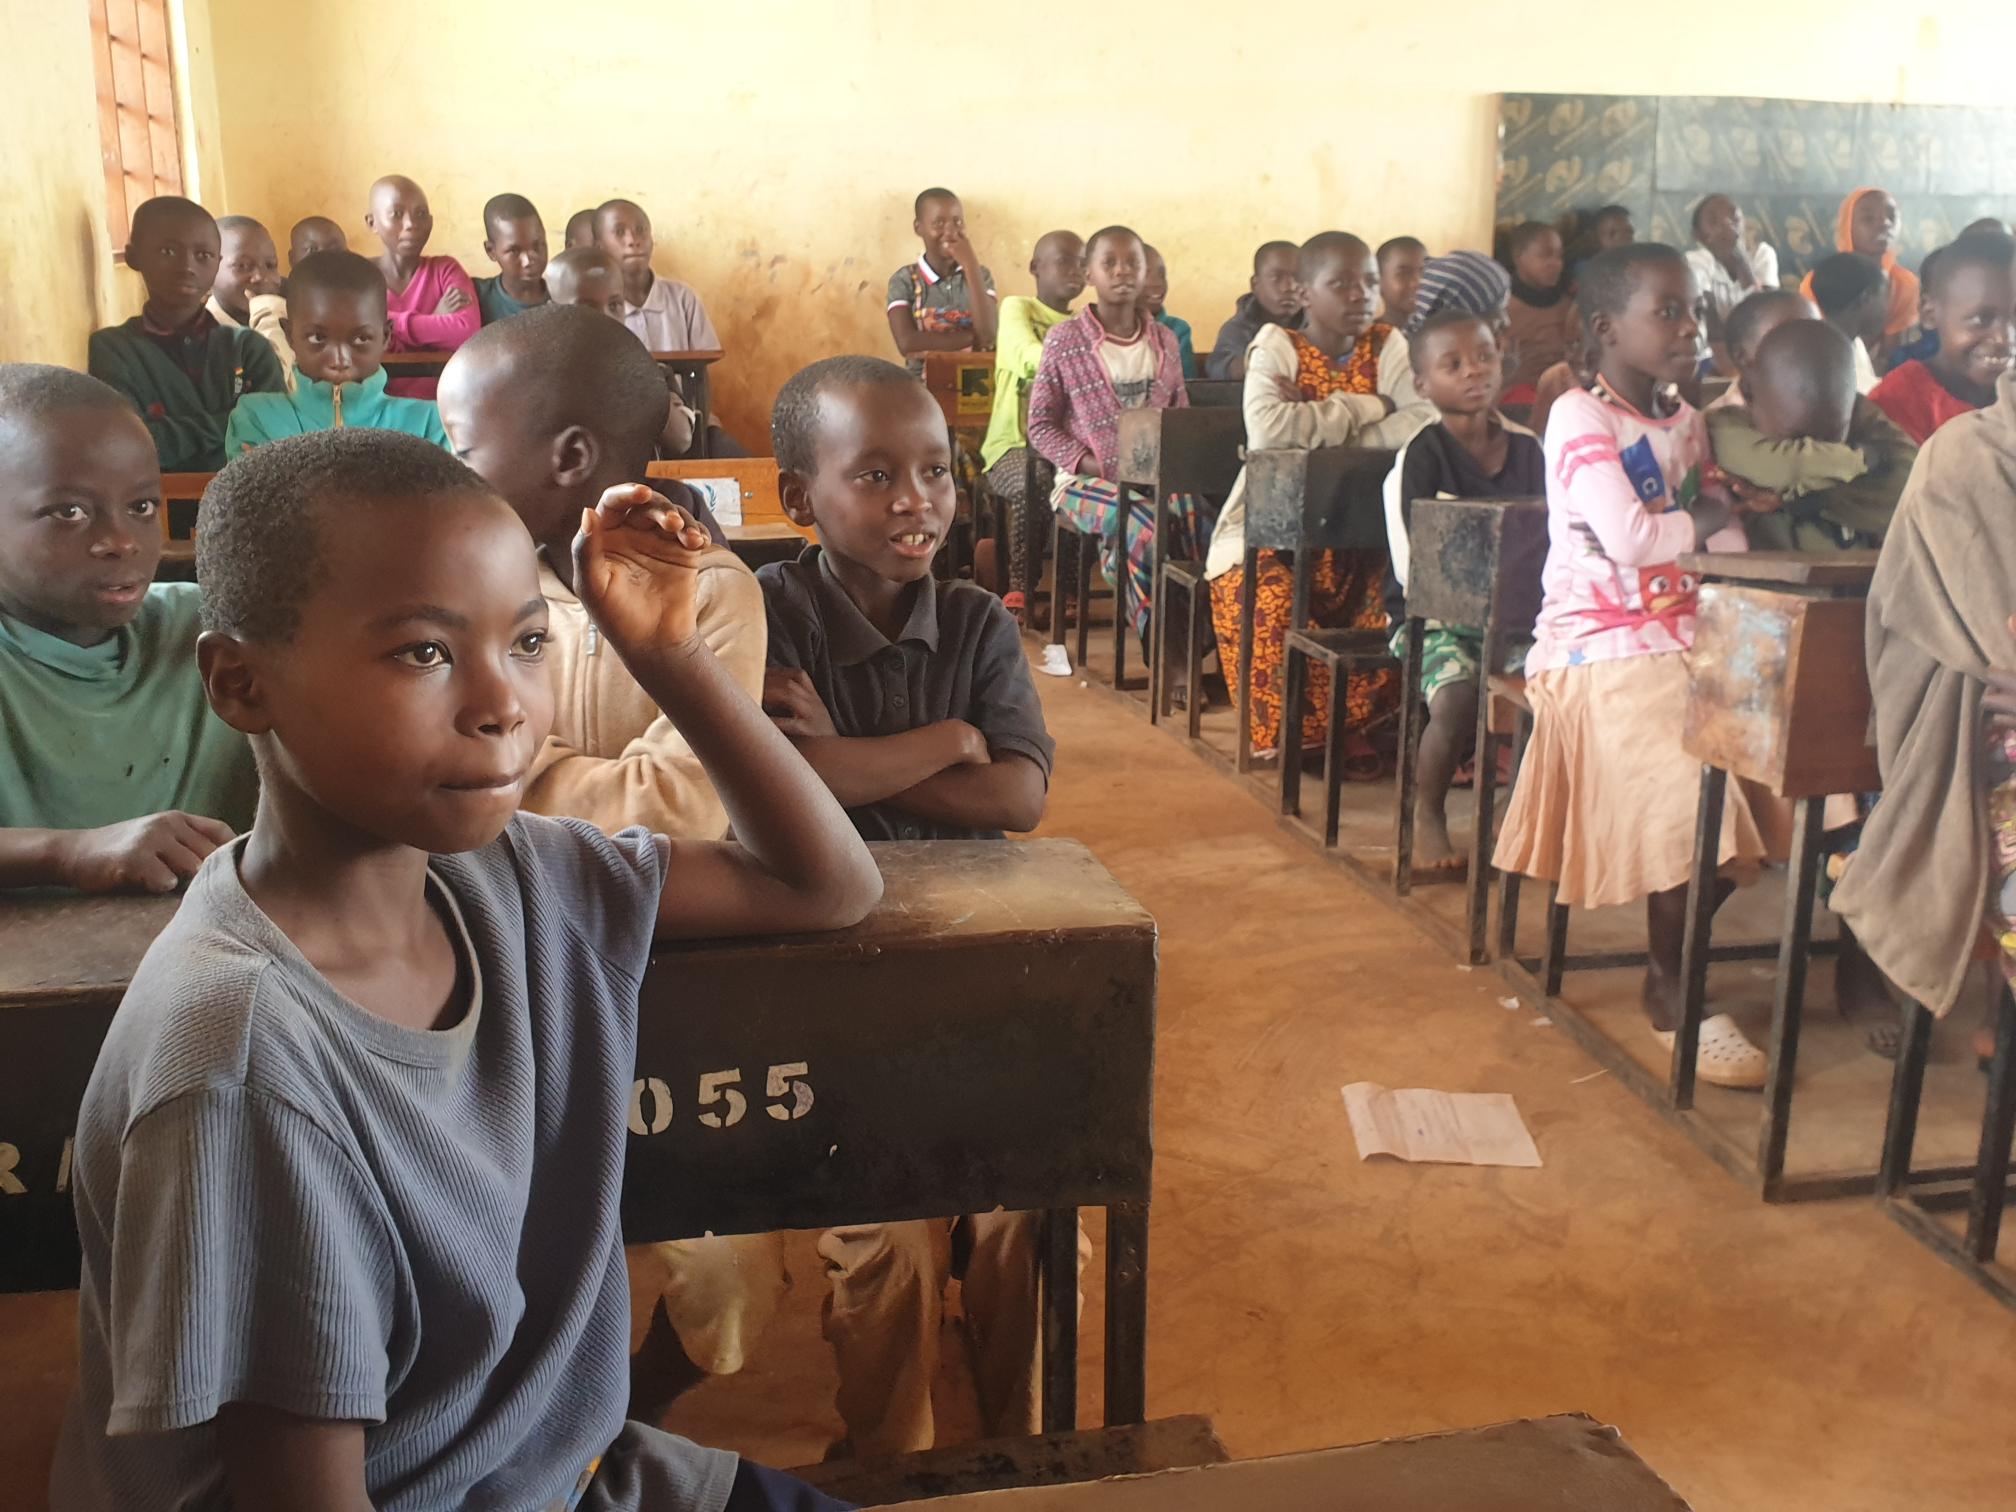 ProFuturo signe un accord avec l’IRC pour déployer son programme d’éducation numérique dans des contextes d’urgence en Tanzanie